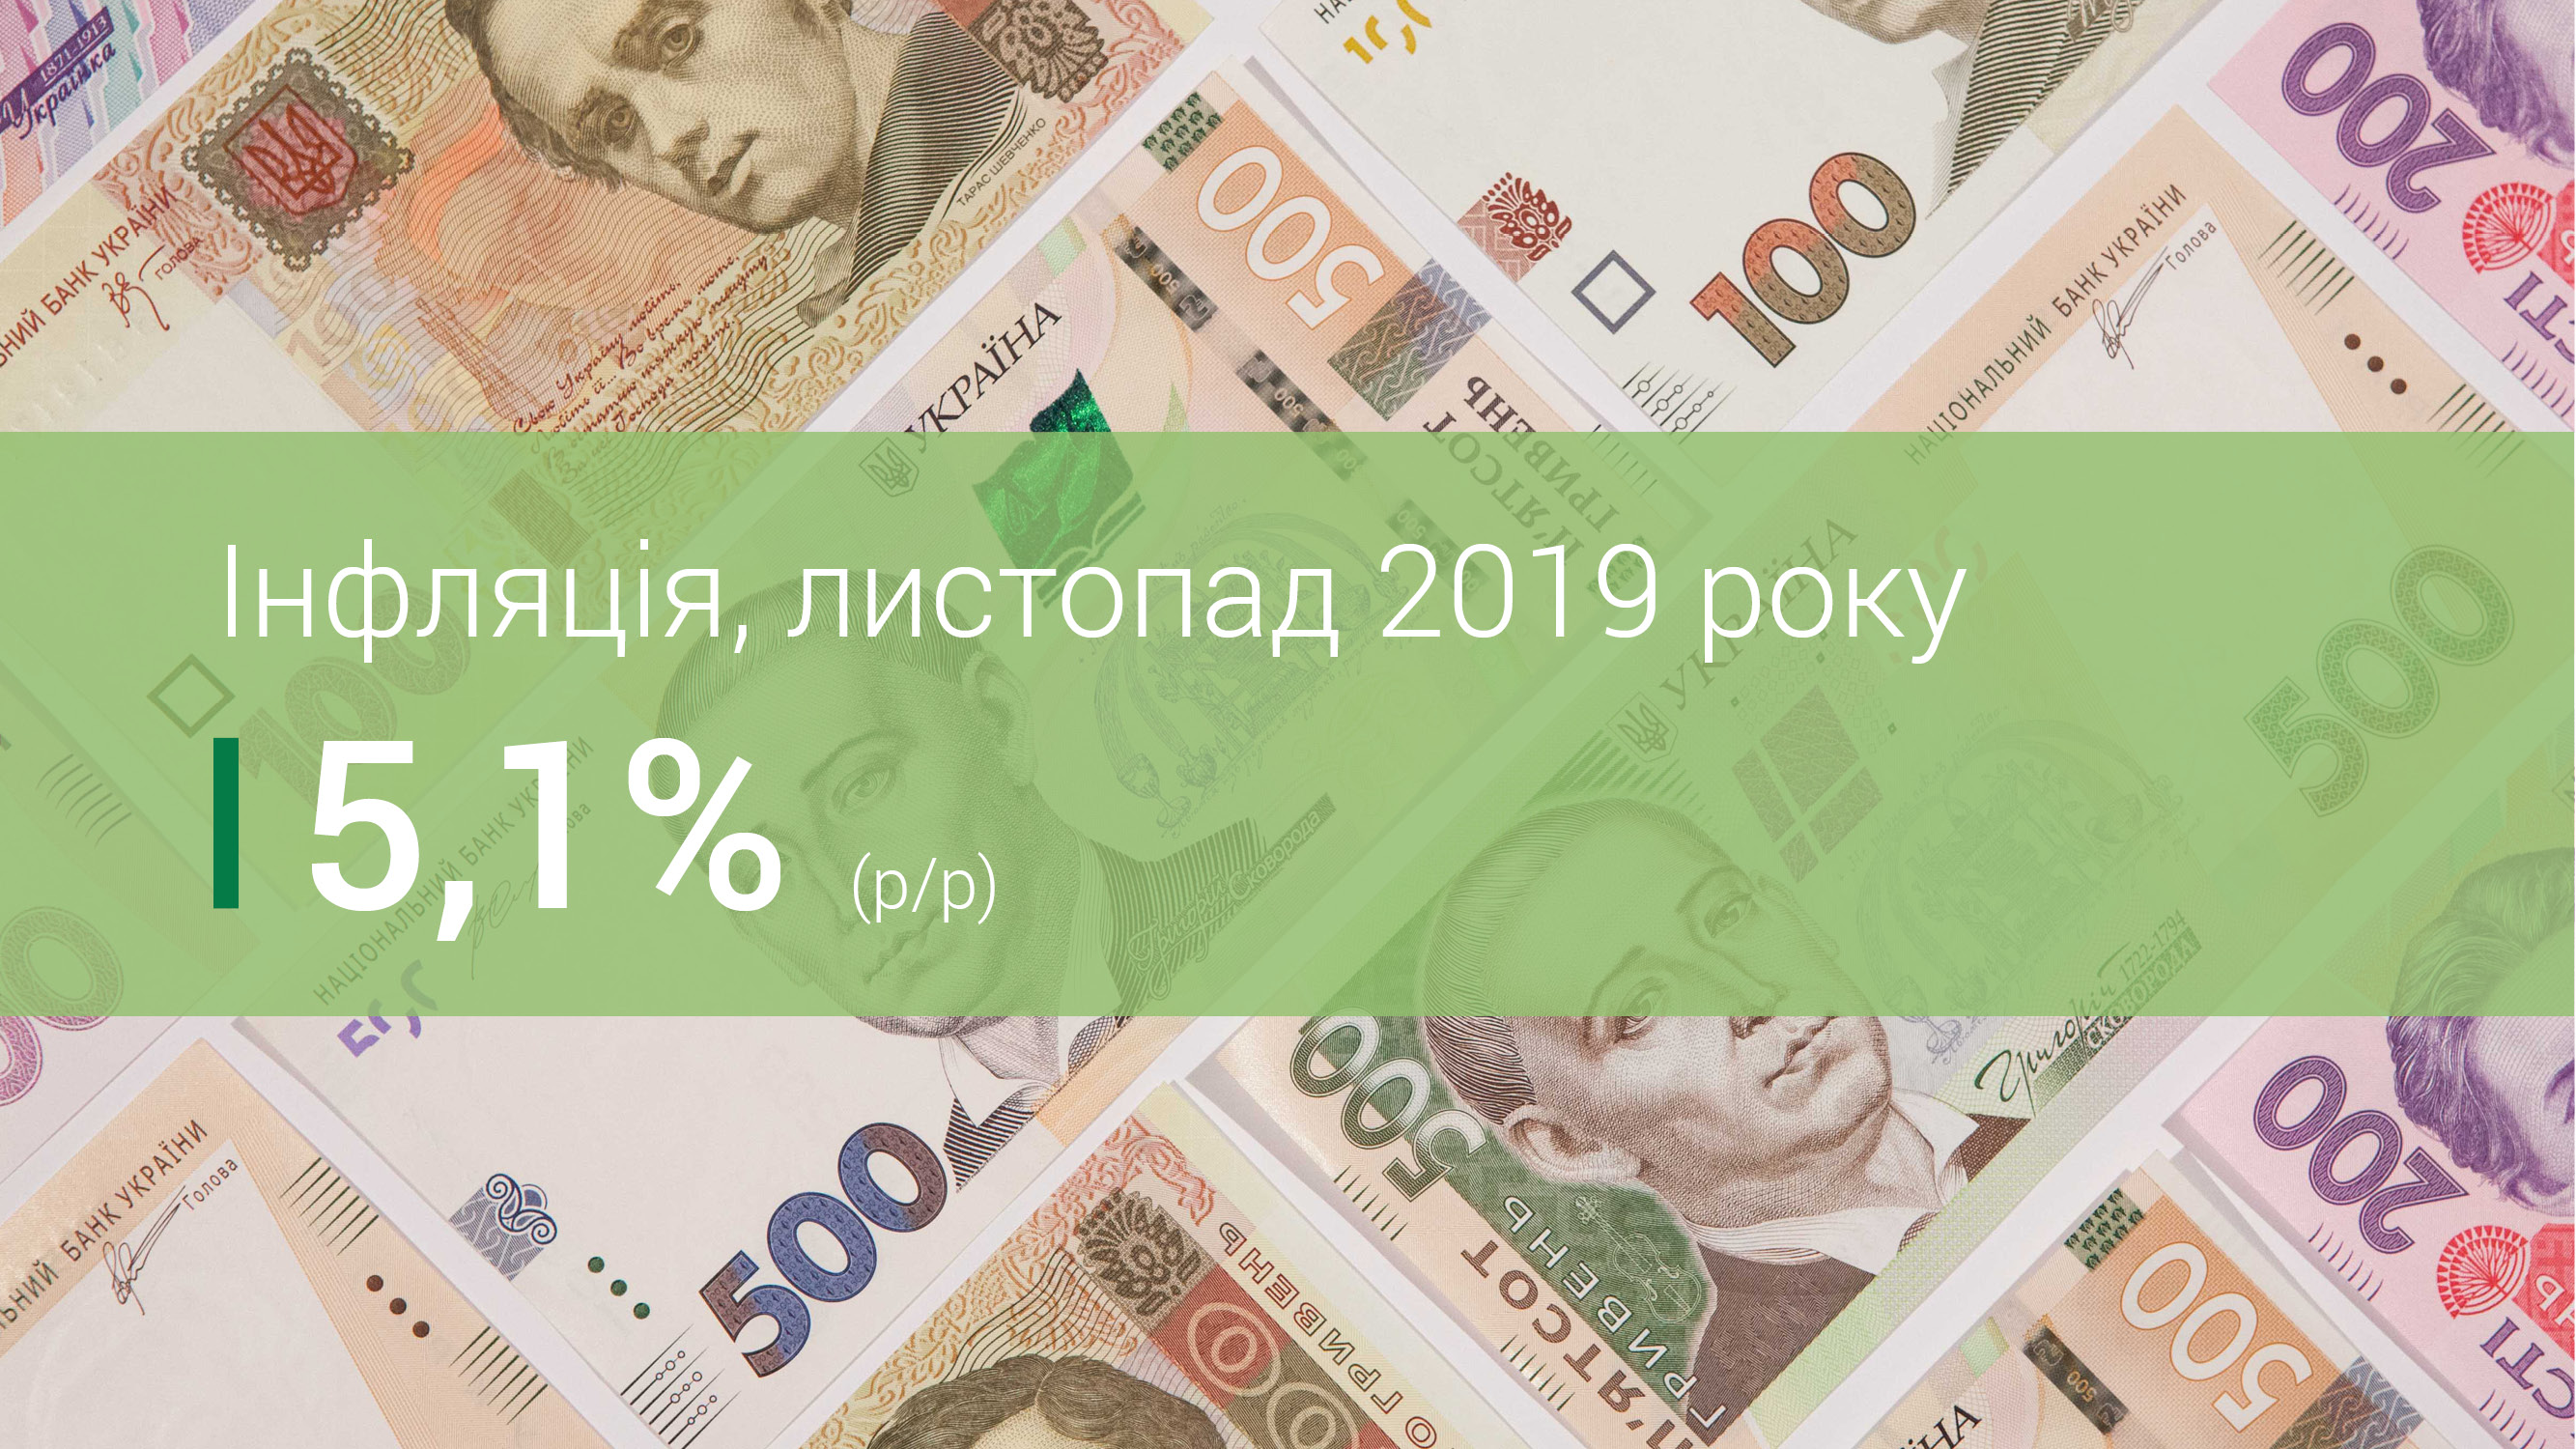 Коментар Національного банку щодо рівня інфляції у листопаді 2019 року